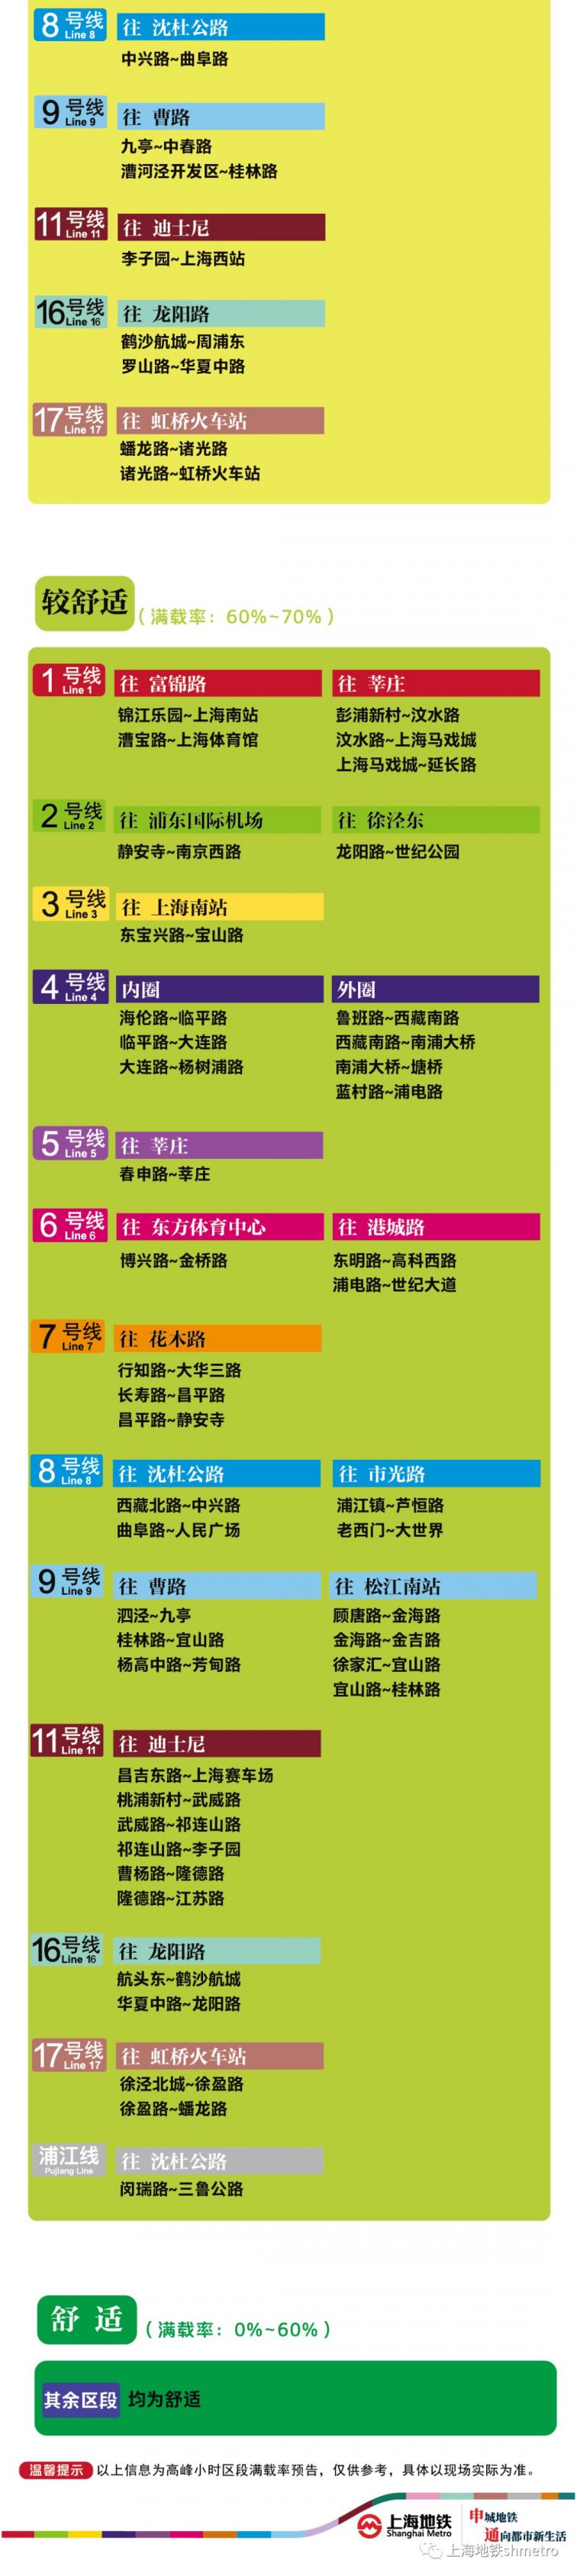 7月31日上海11座地铁站早高峰限流 (附舒适度预告)